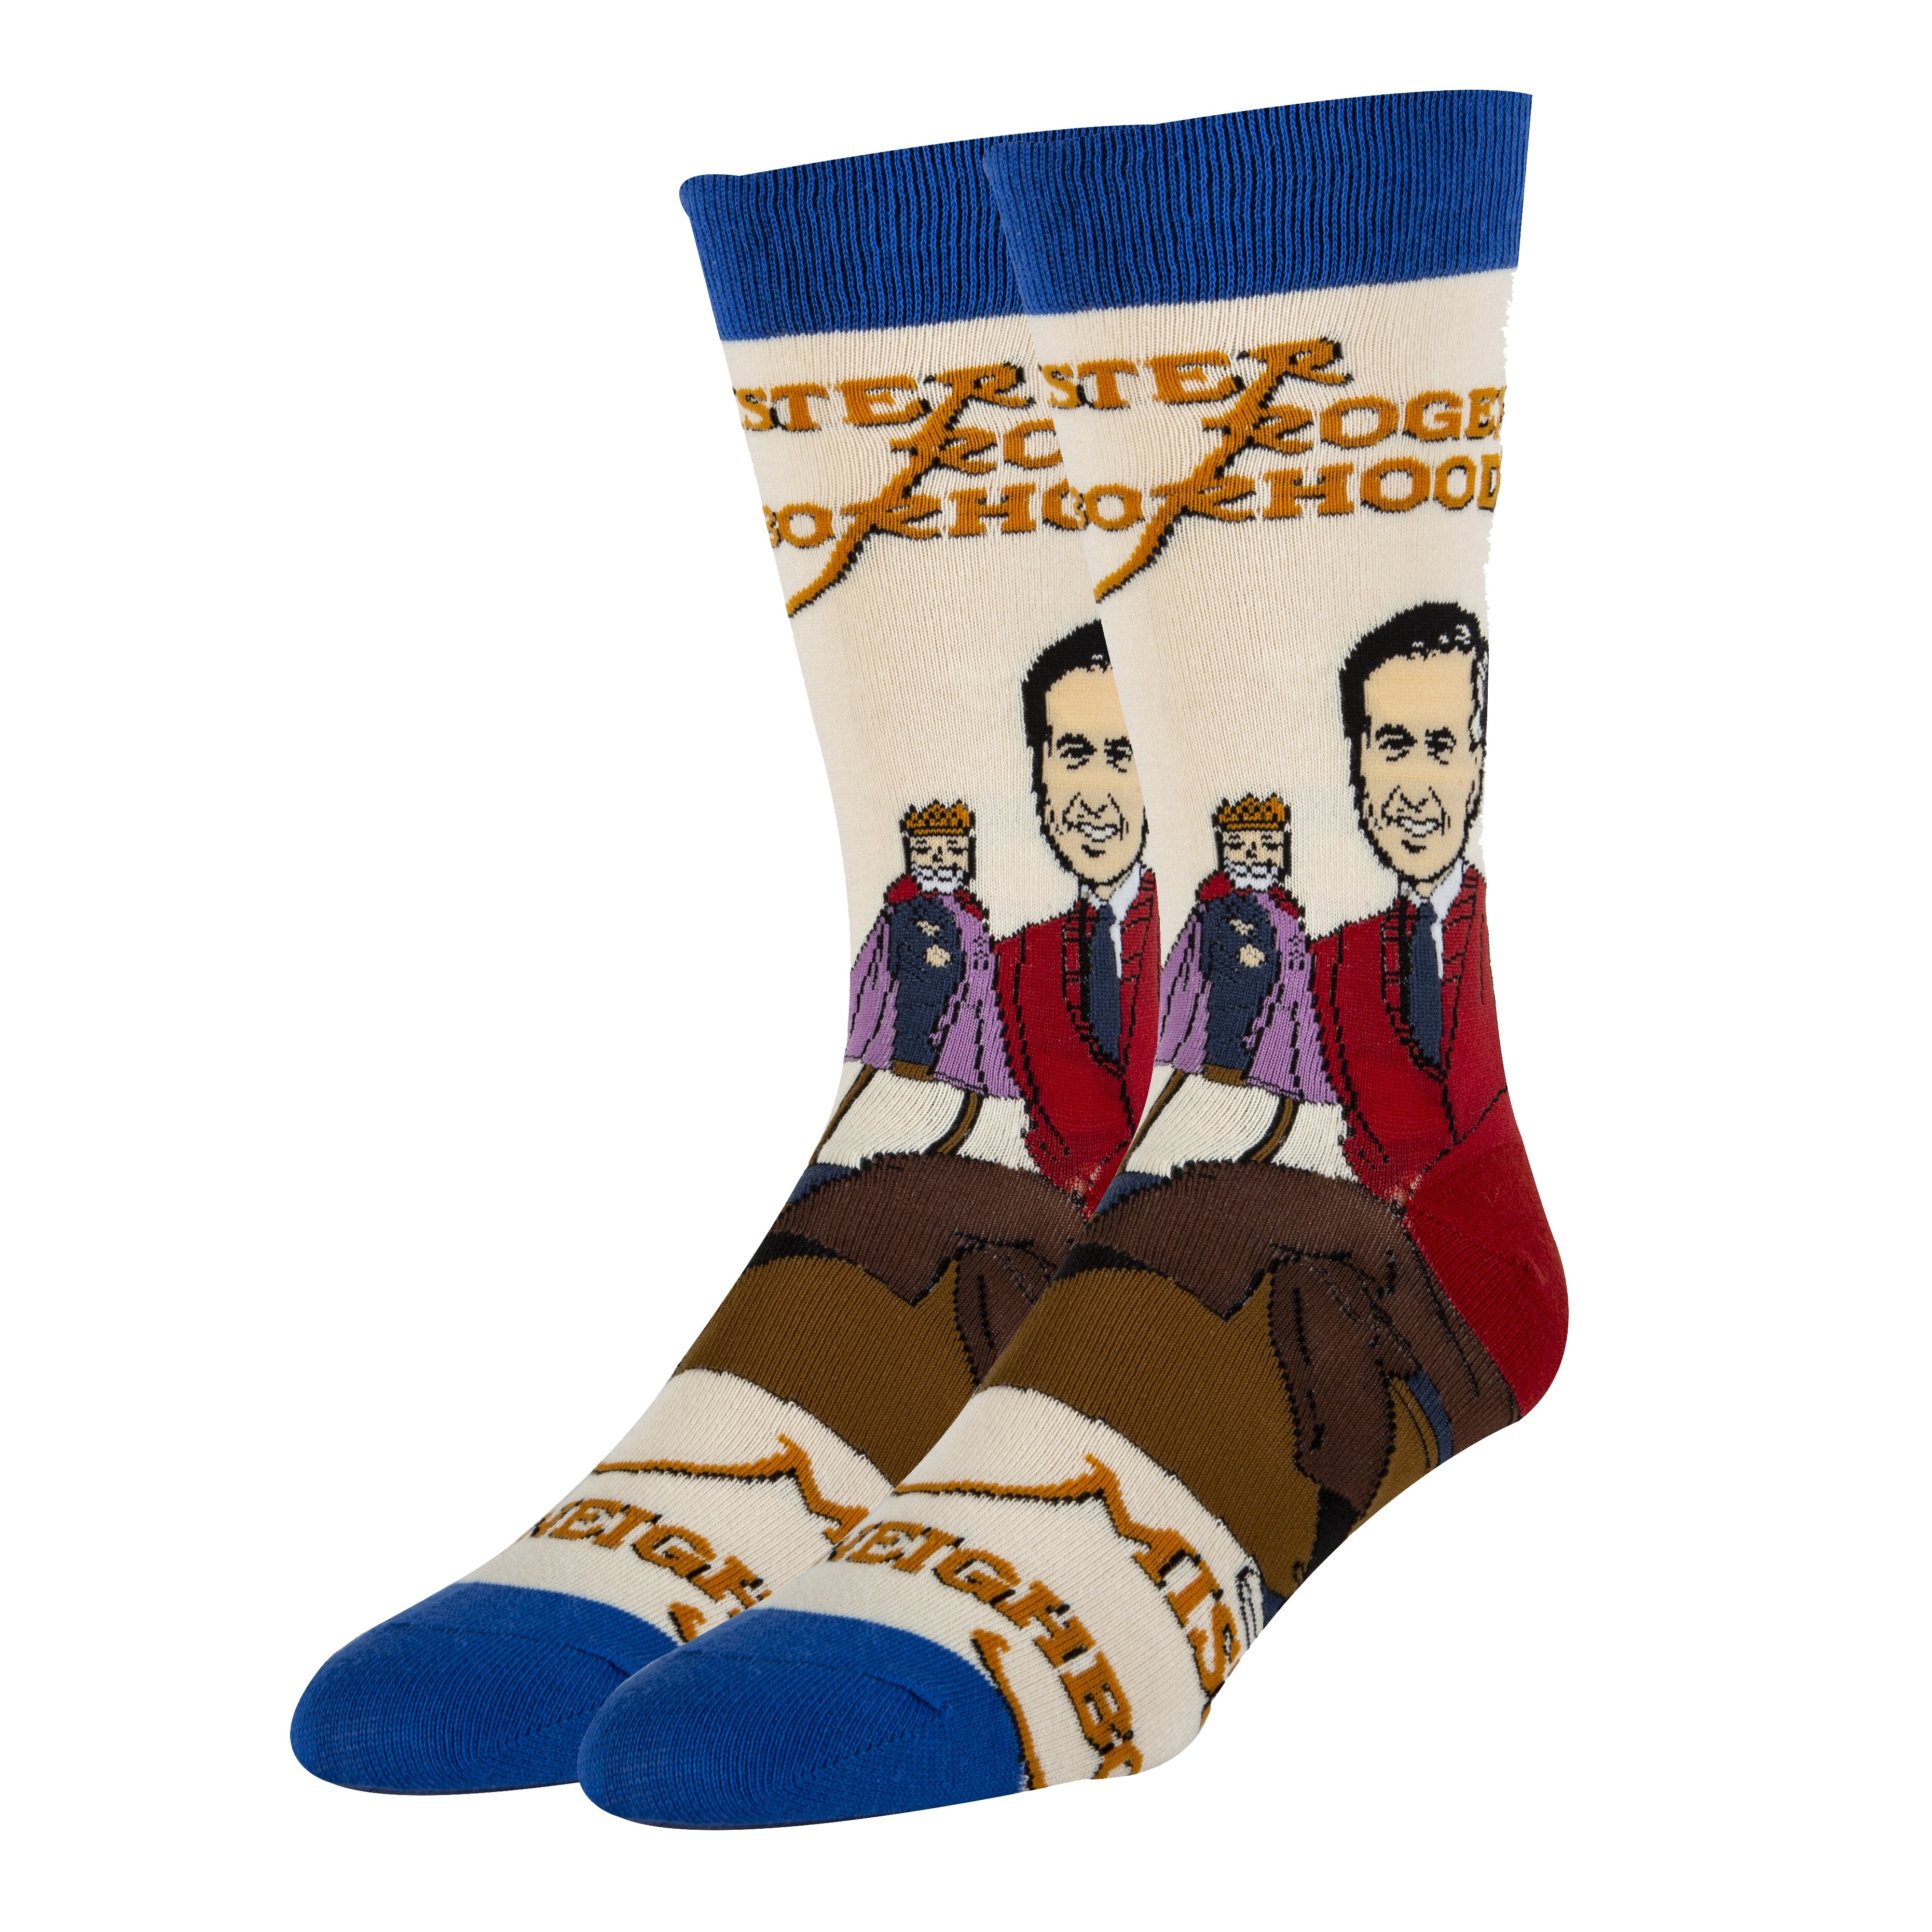 Mr. Rogers & Friday Socks | Novelty Socks For Men